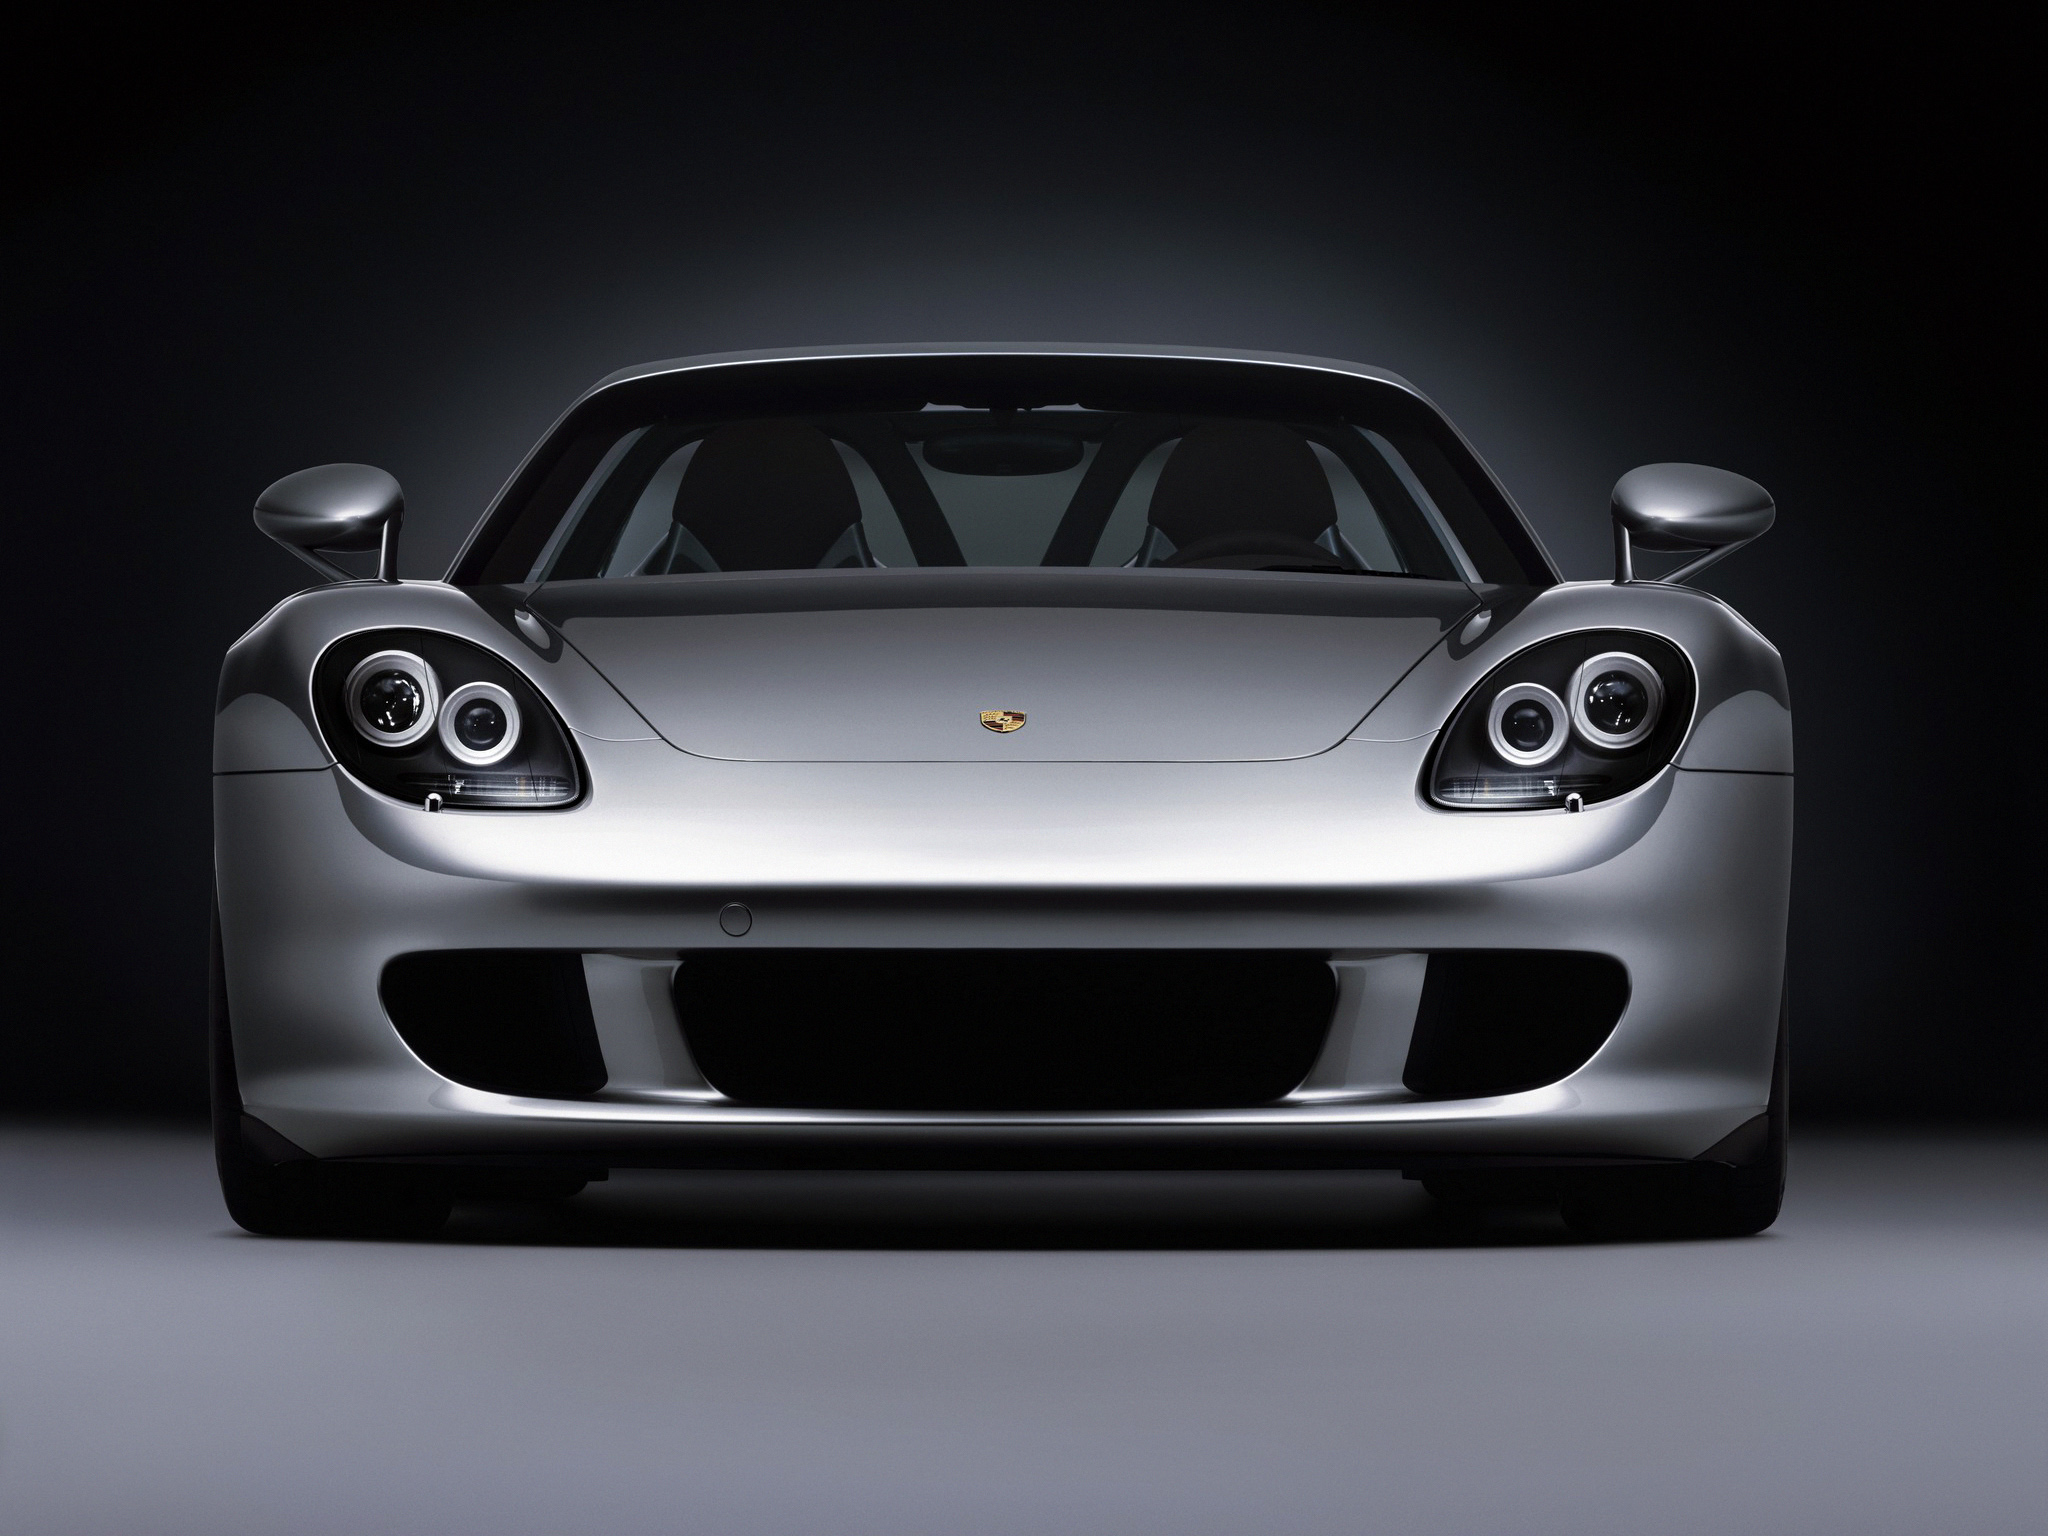 2003, Porsche, Carrera, G t, 980, Supercar Wallpaper